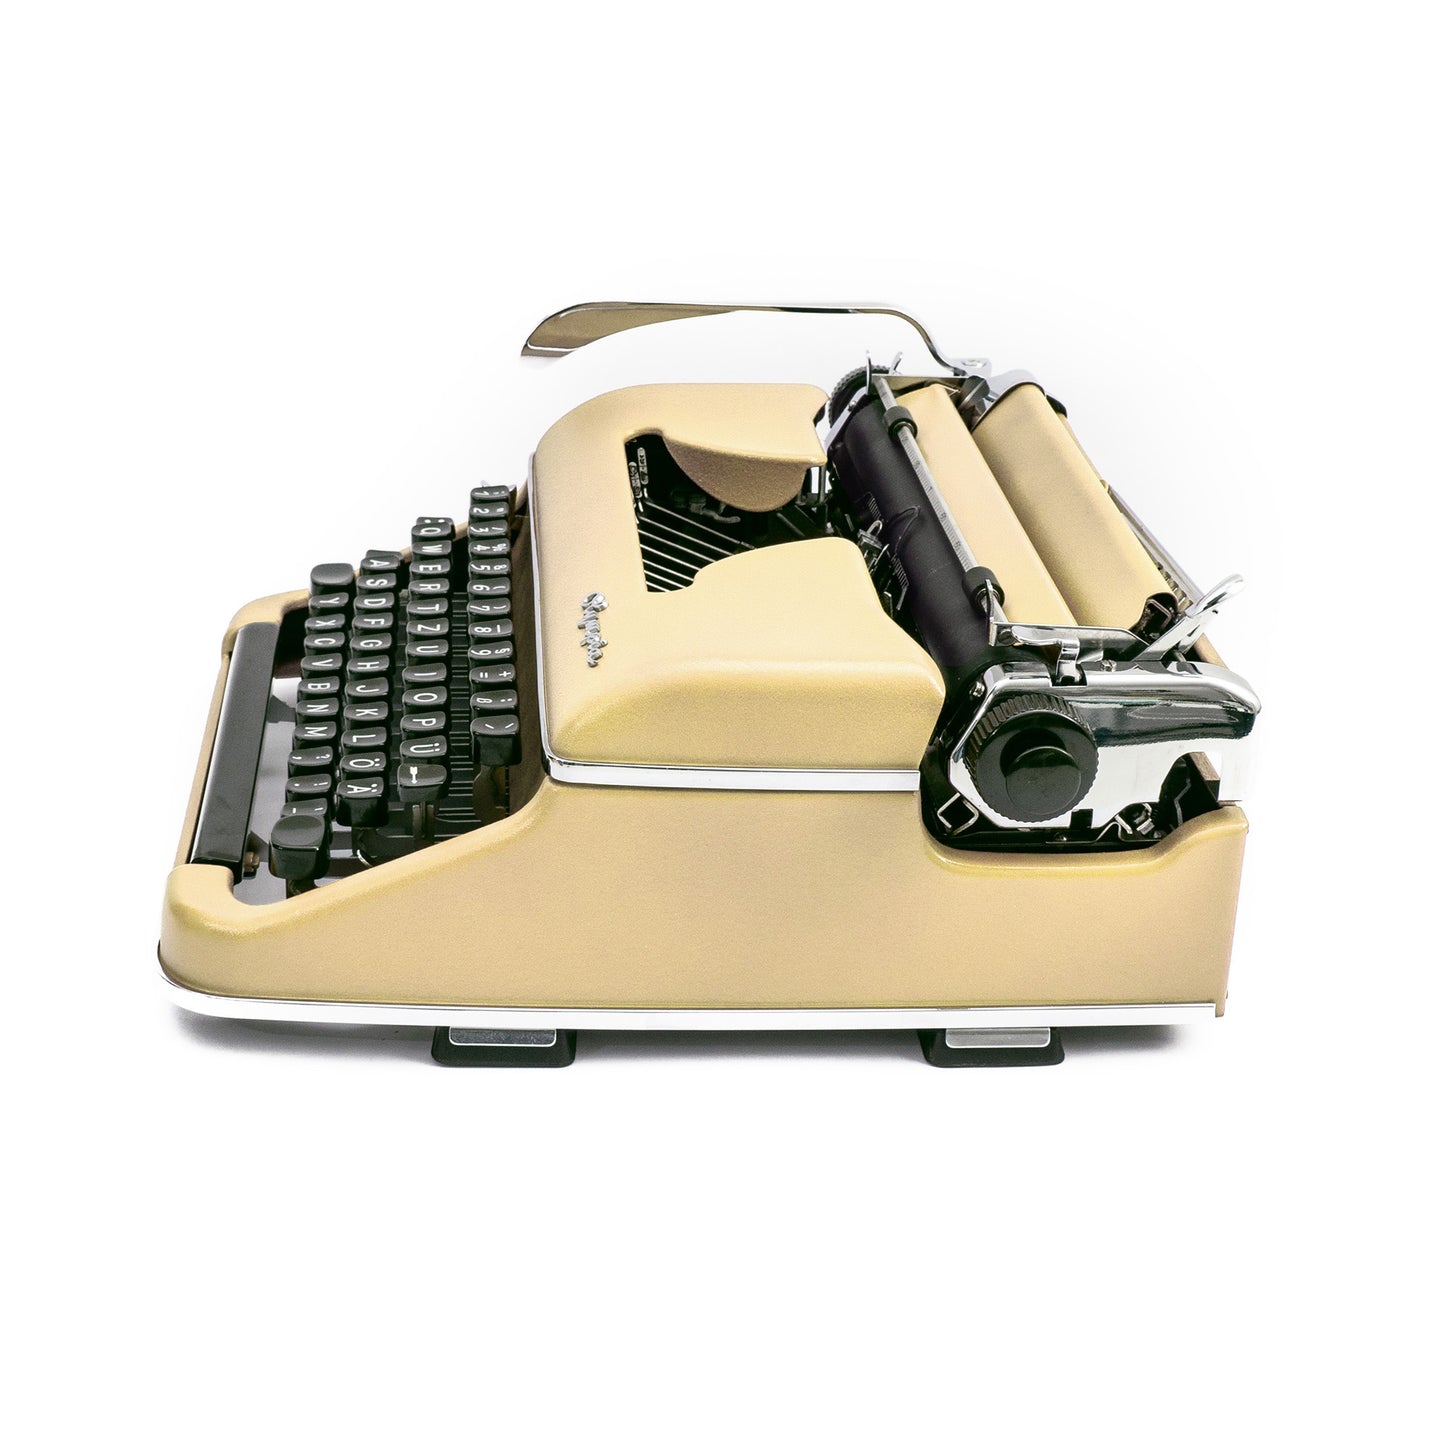 Typewriter Olympia SM2, Creme-white